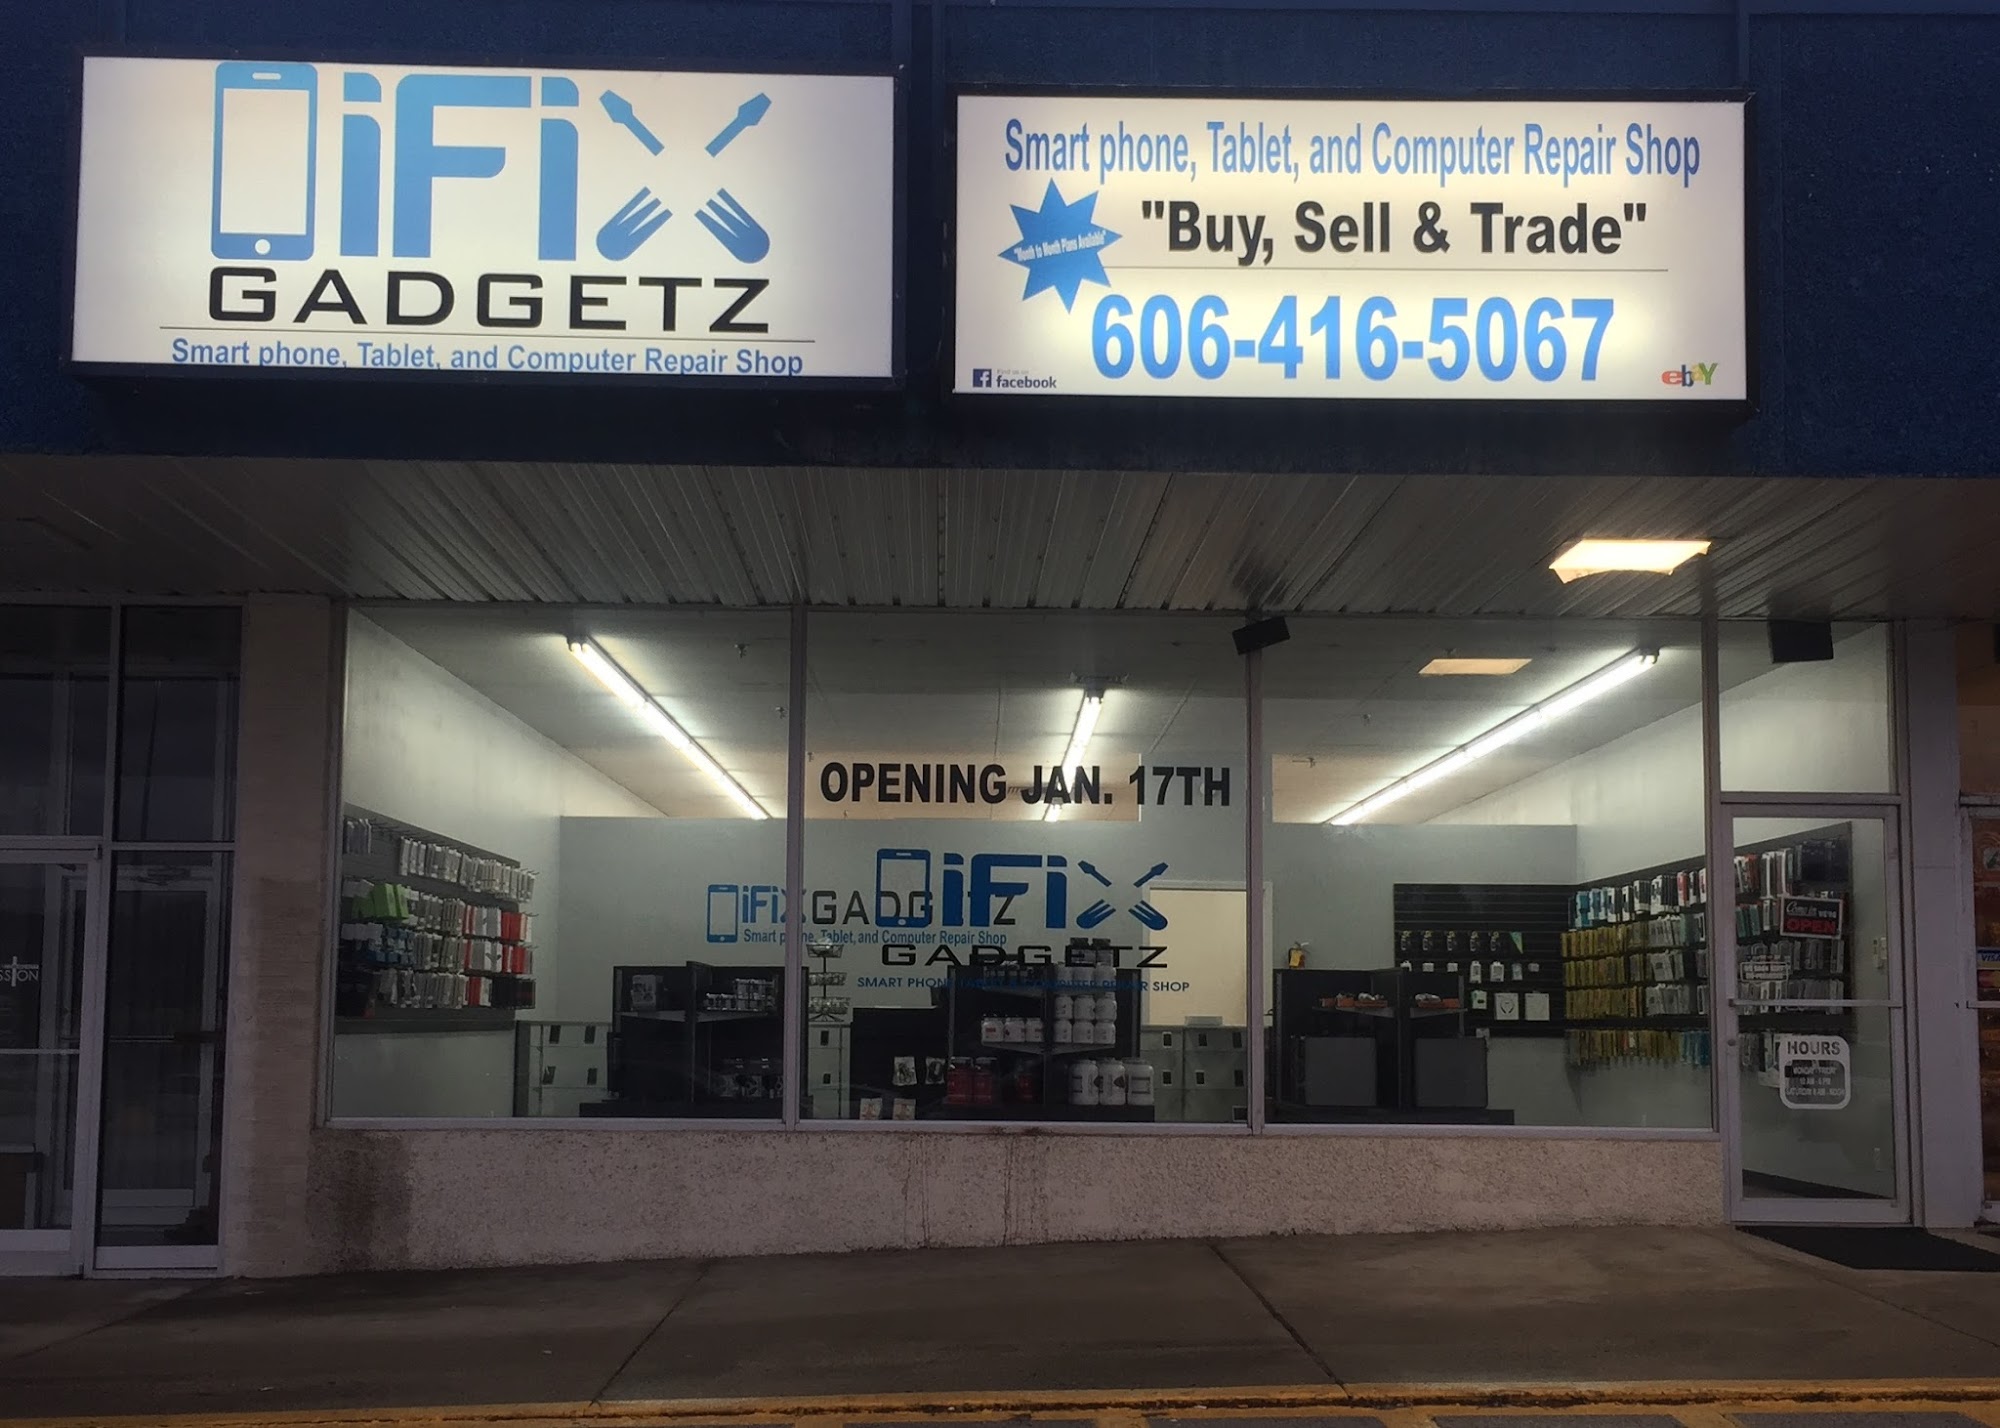 iFix Gadgetz - Mobile Phone & Electronic Repair Shop